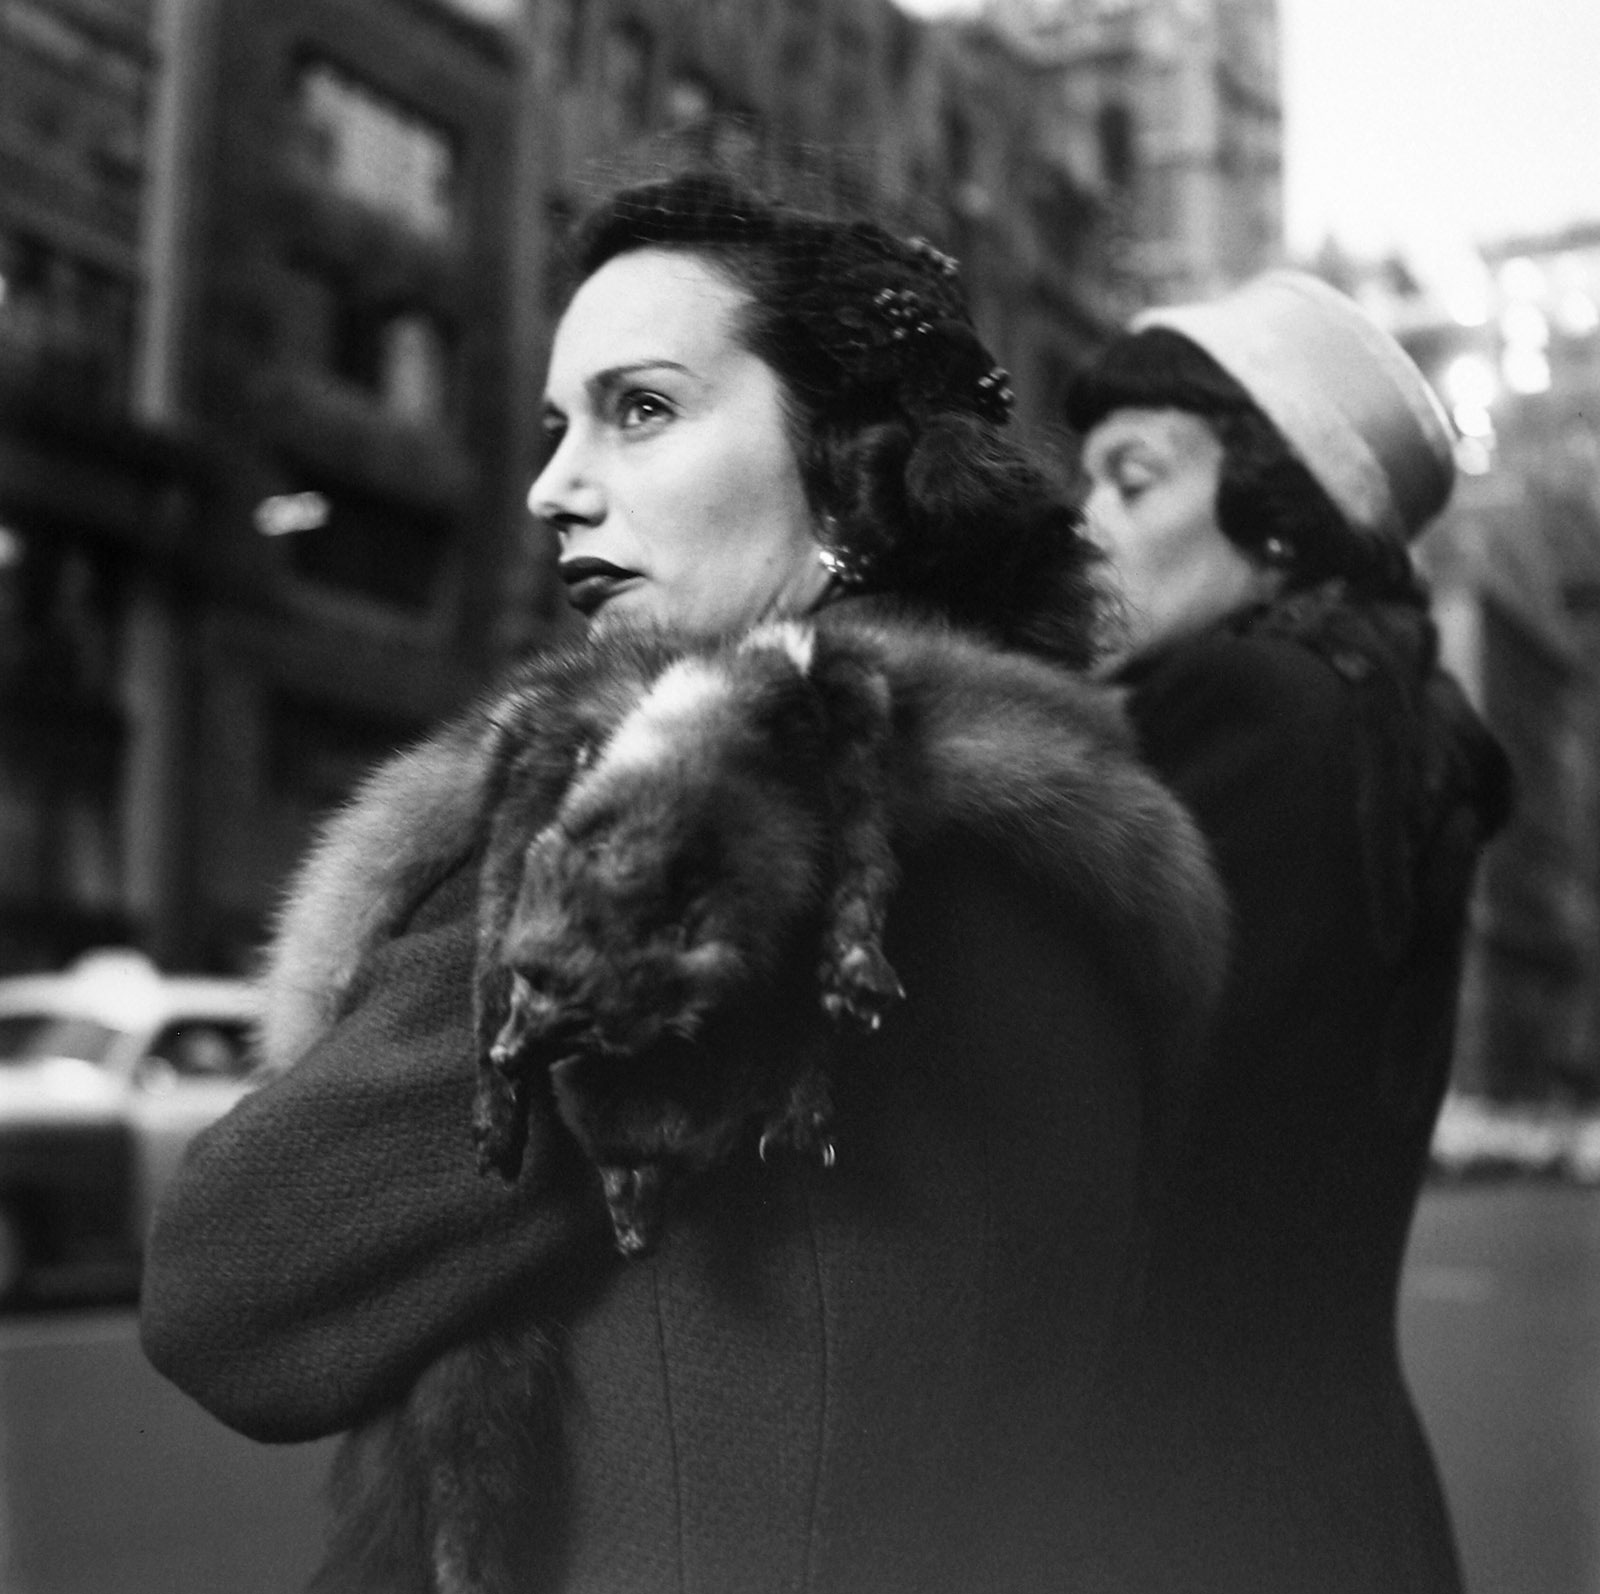 New York, NY, Dec. 2, 1954